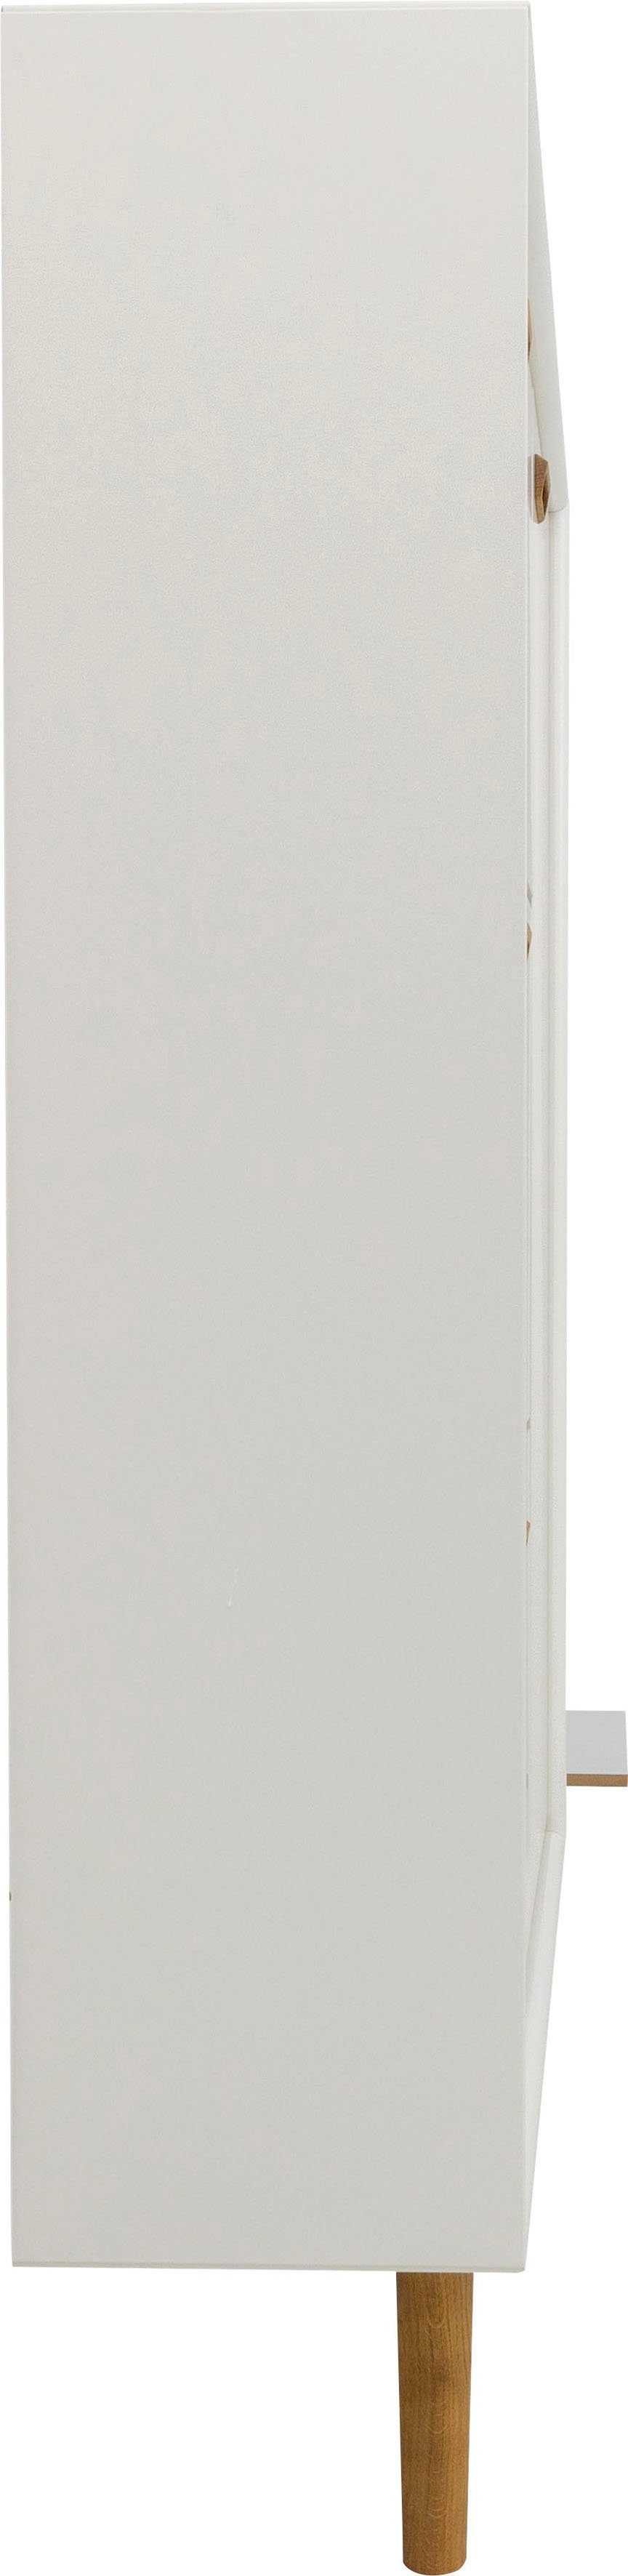 Tenzo Design 3 und von Design Schuhschrank Klappen, 1 studio Tür white mit SVEA Tenzo